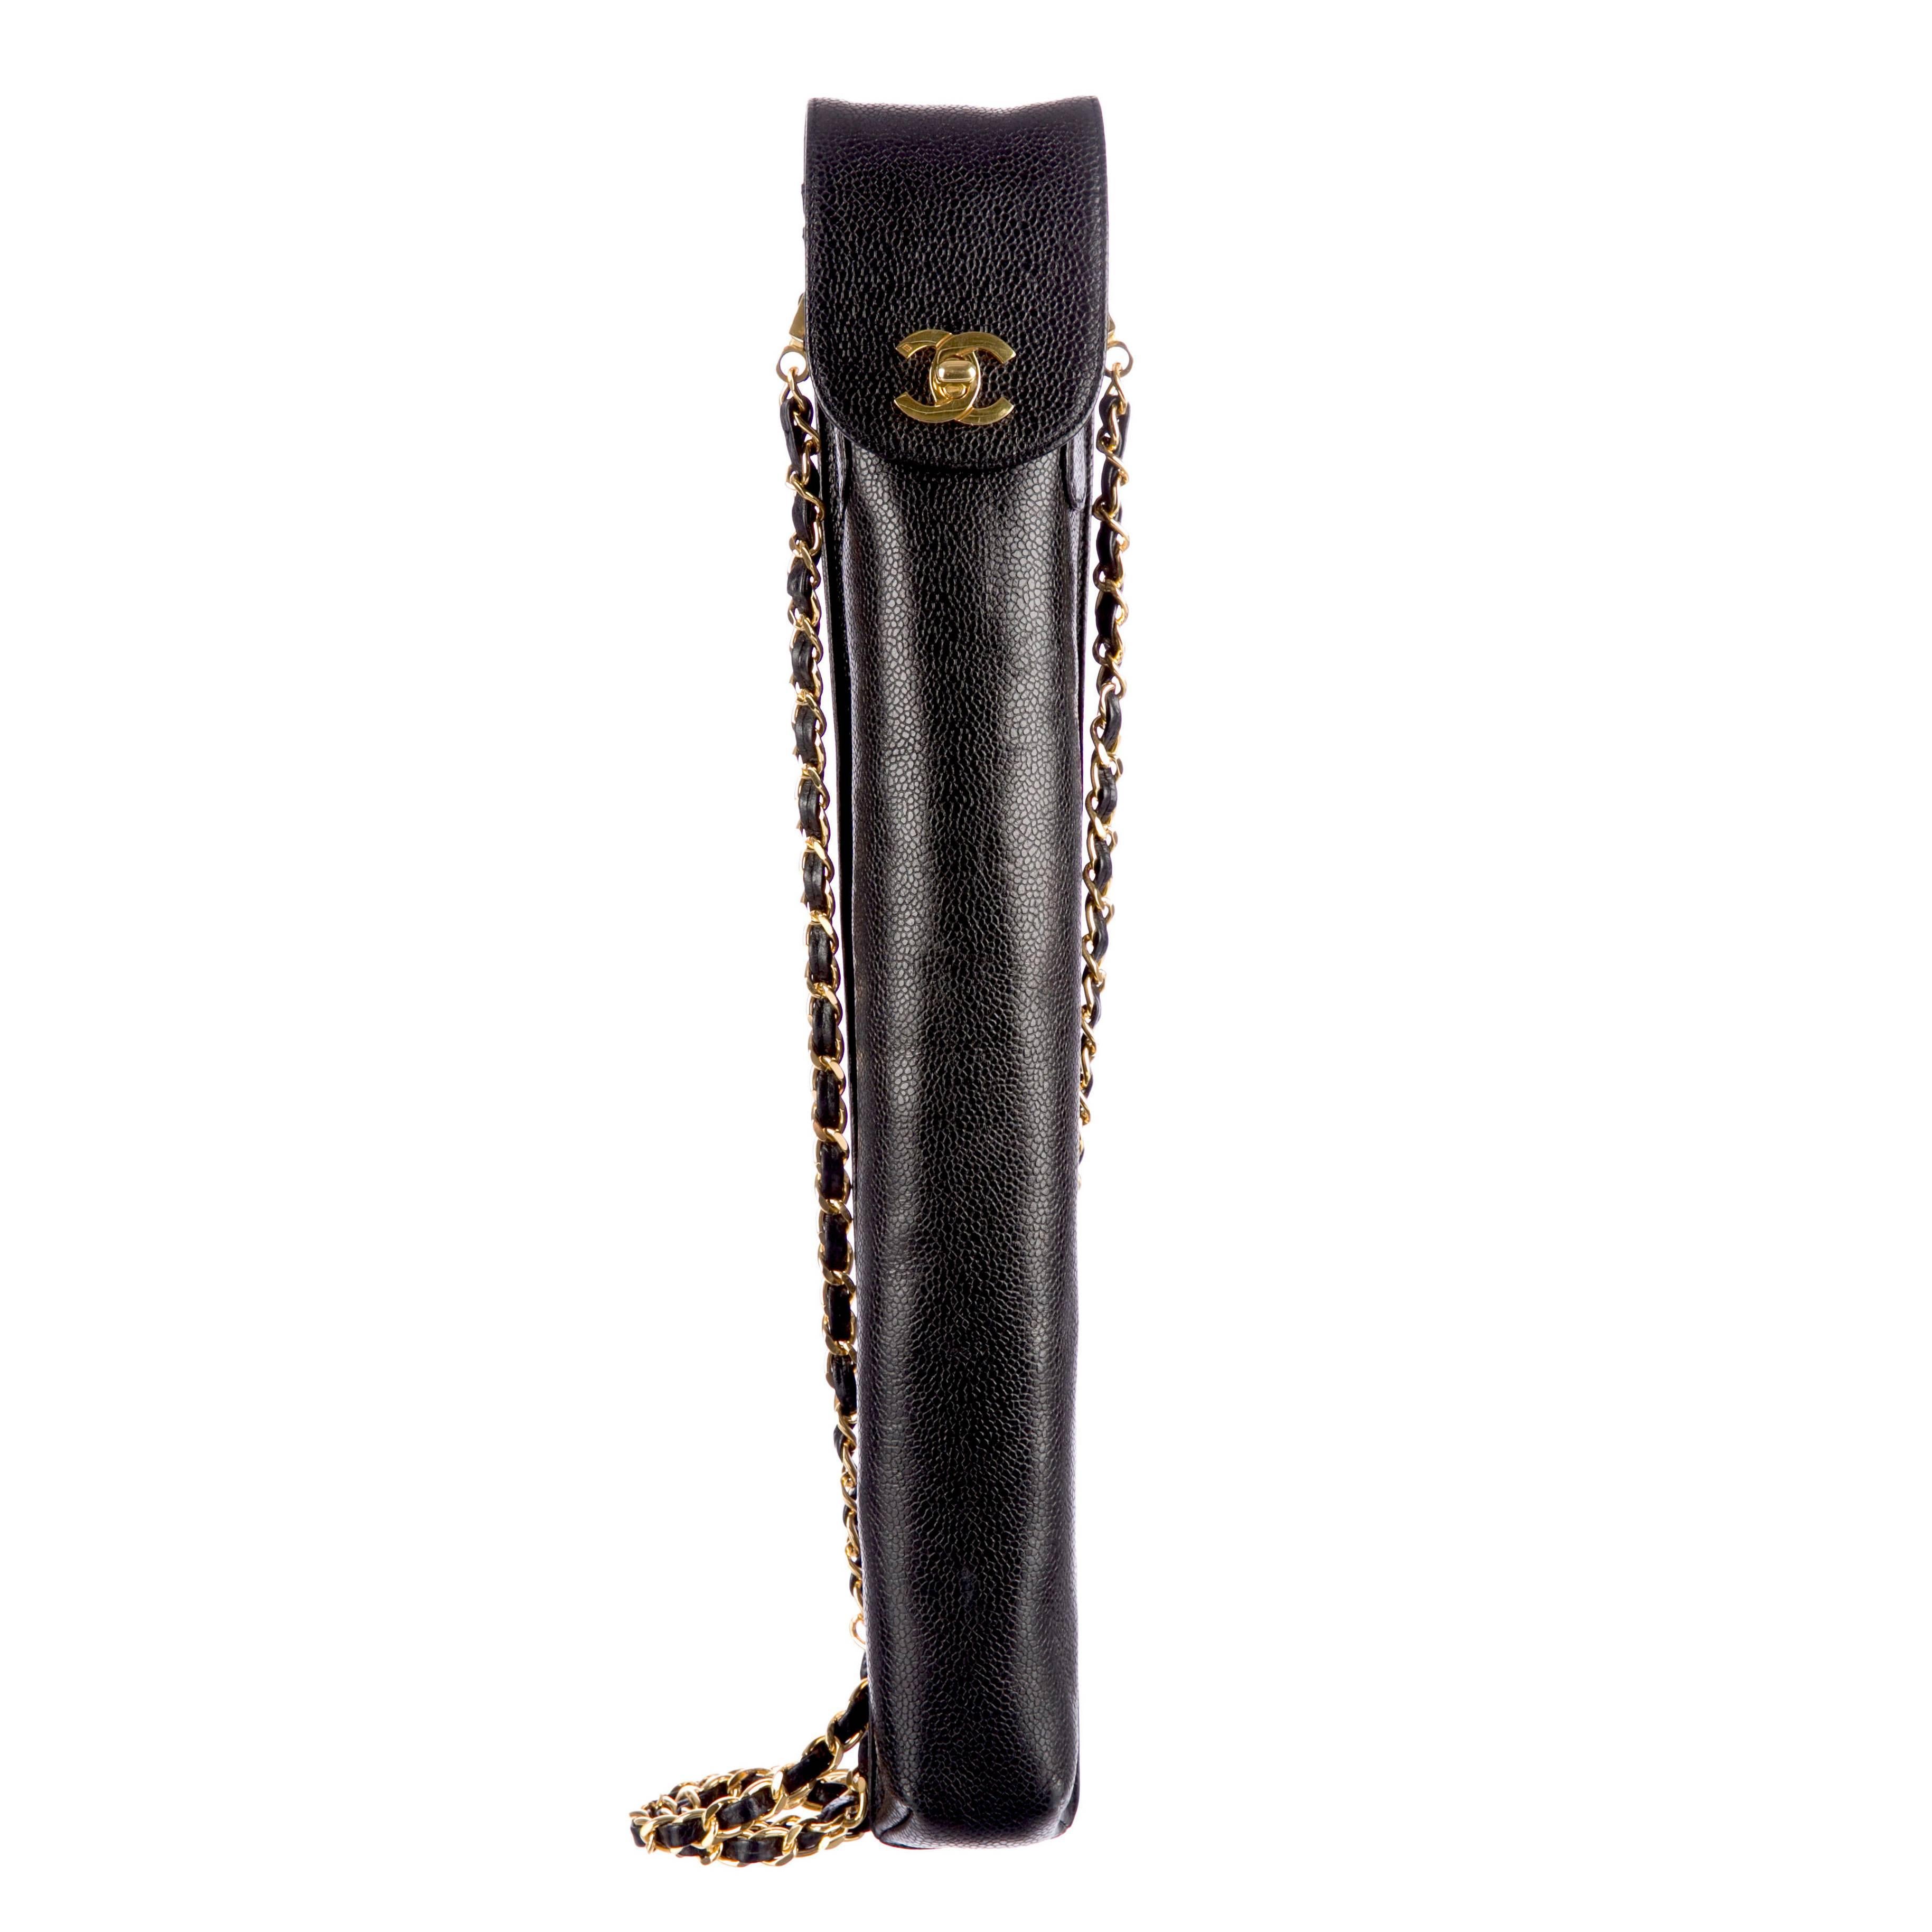 Chanel Black Caviar Leather Umbrella Case, 1995 For Sale